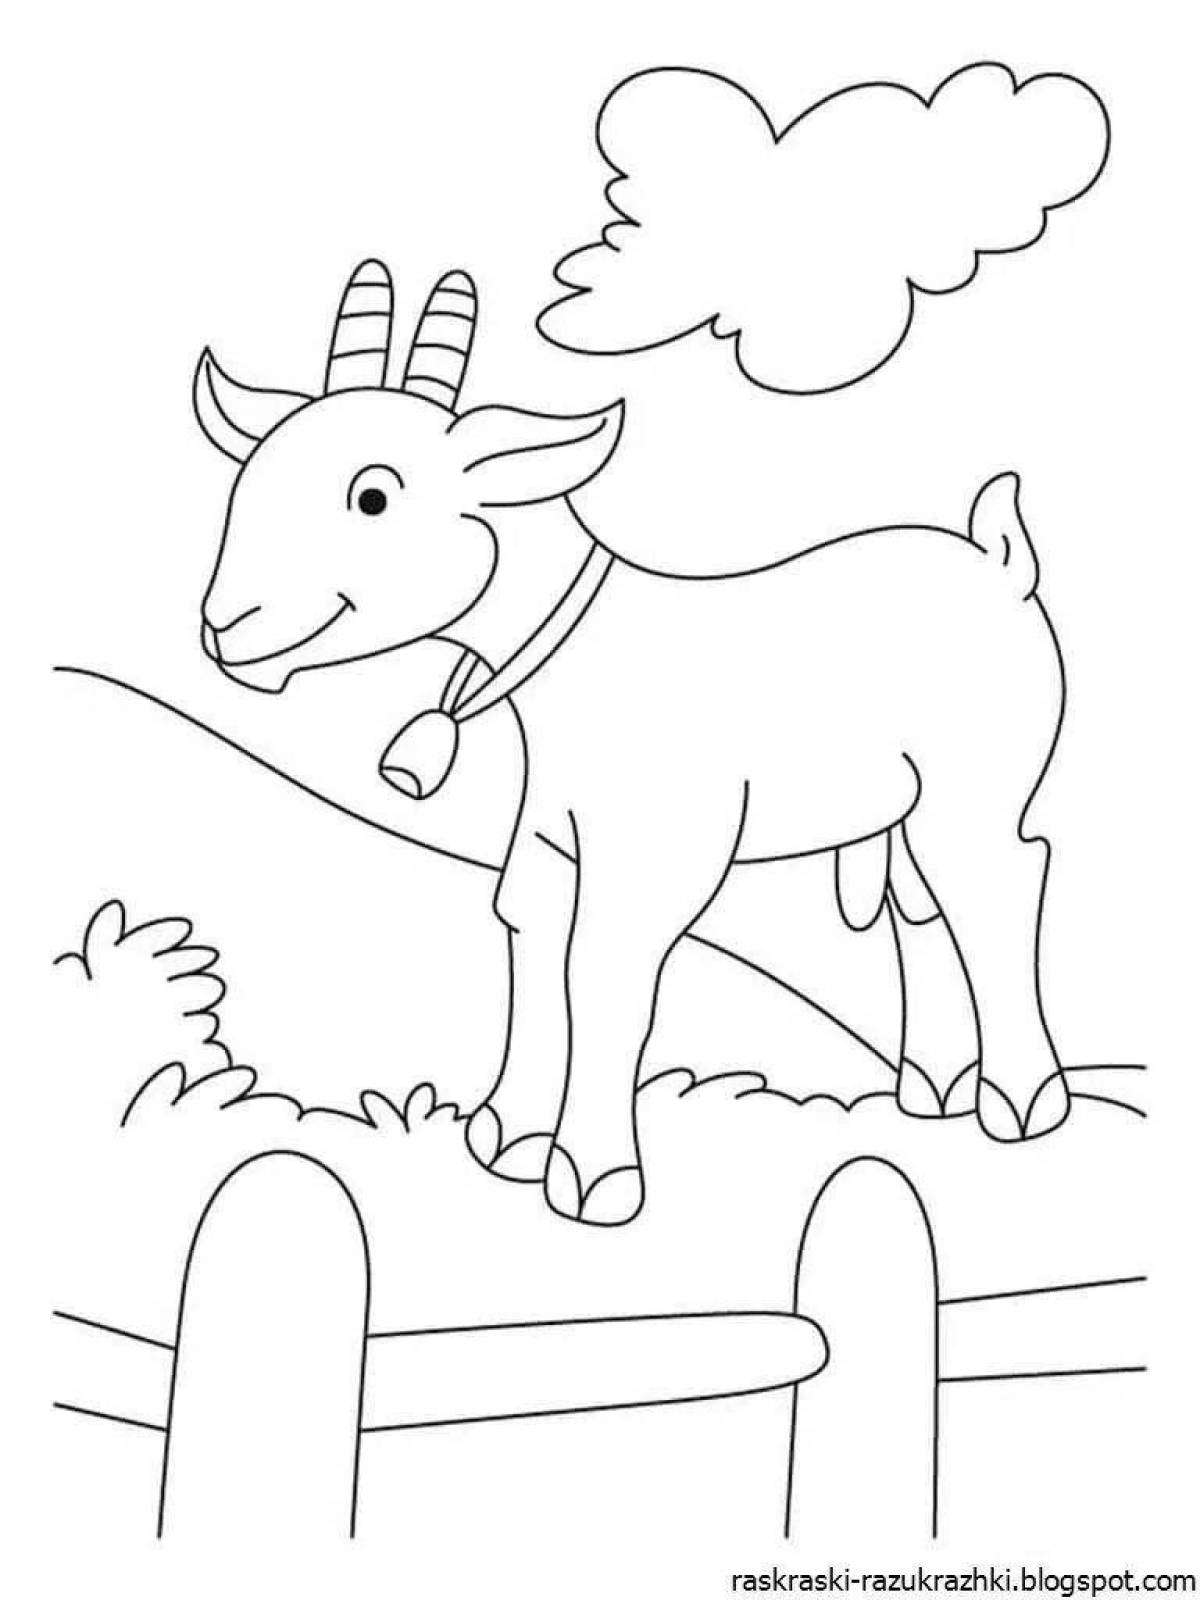 Фото Праздничная раскраска козла для детей